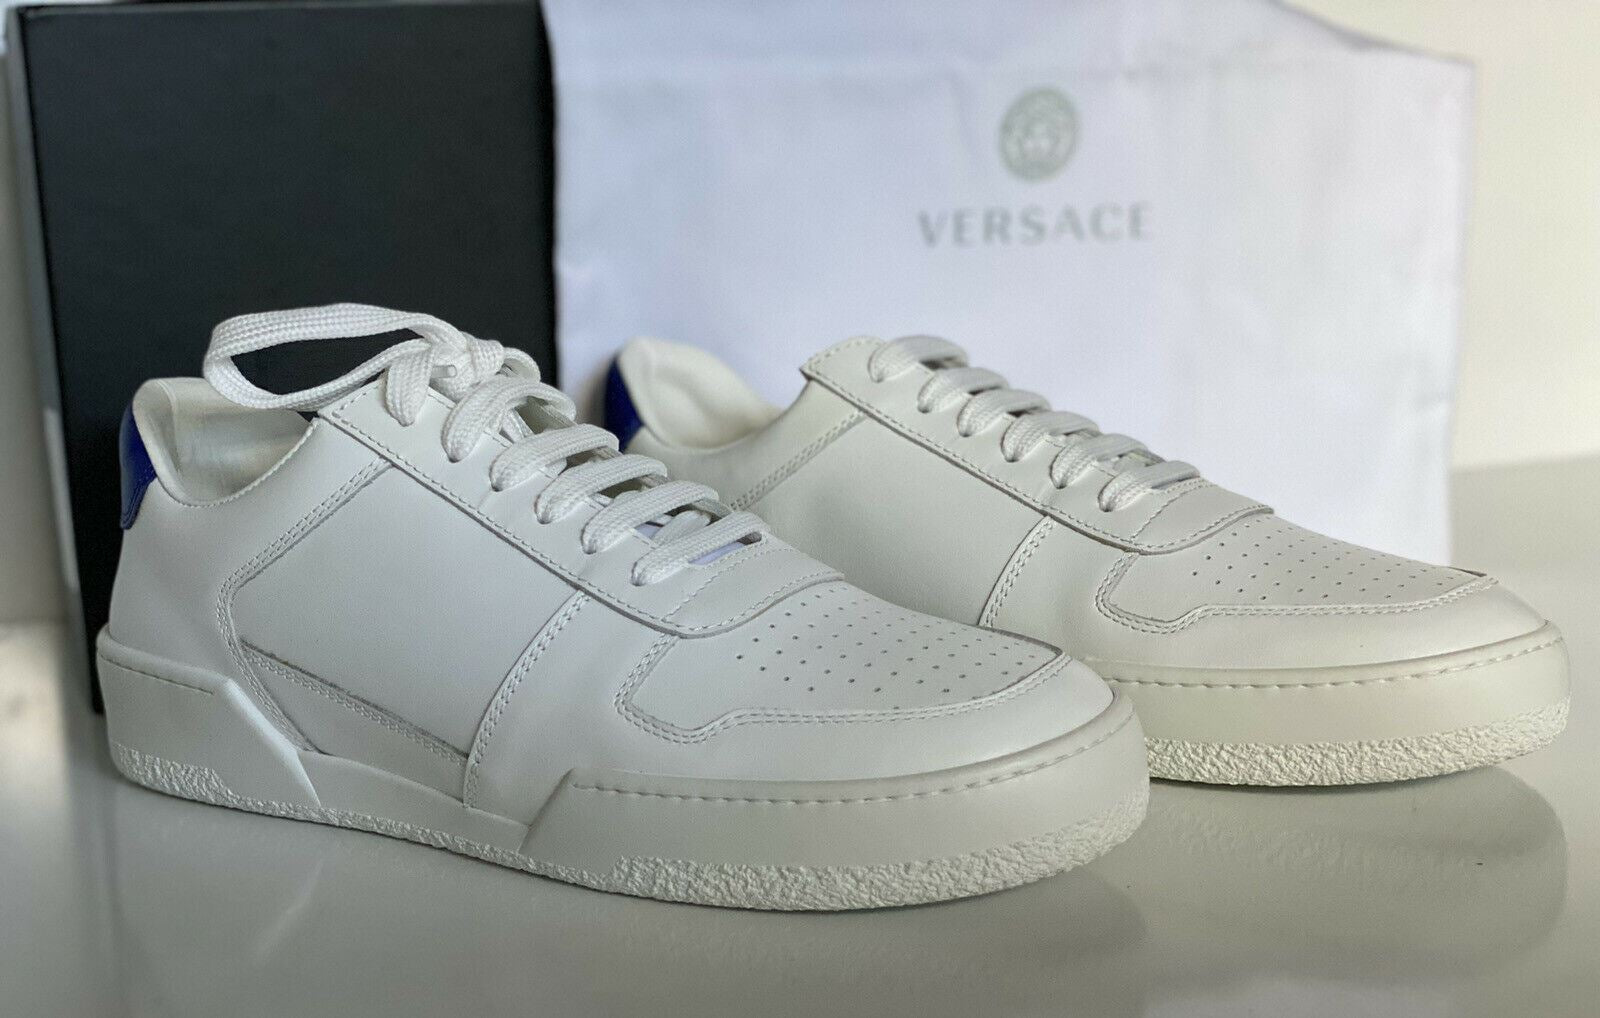 NIB 495 $ Versace Herren-Sneakers aus weißem Leder 10 US (43 Euro) Italien DSU7843 